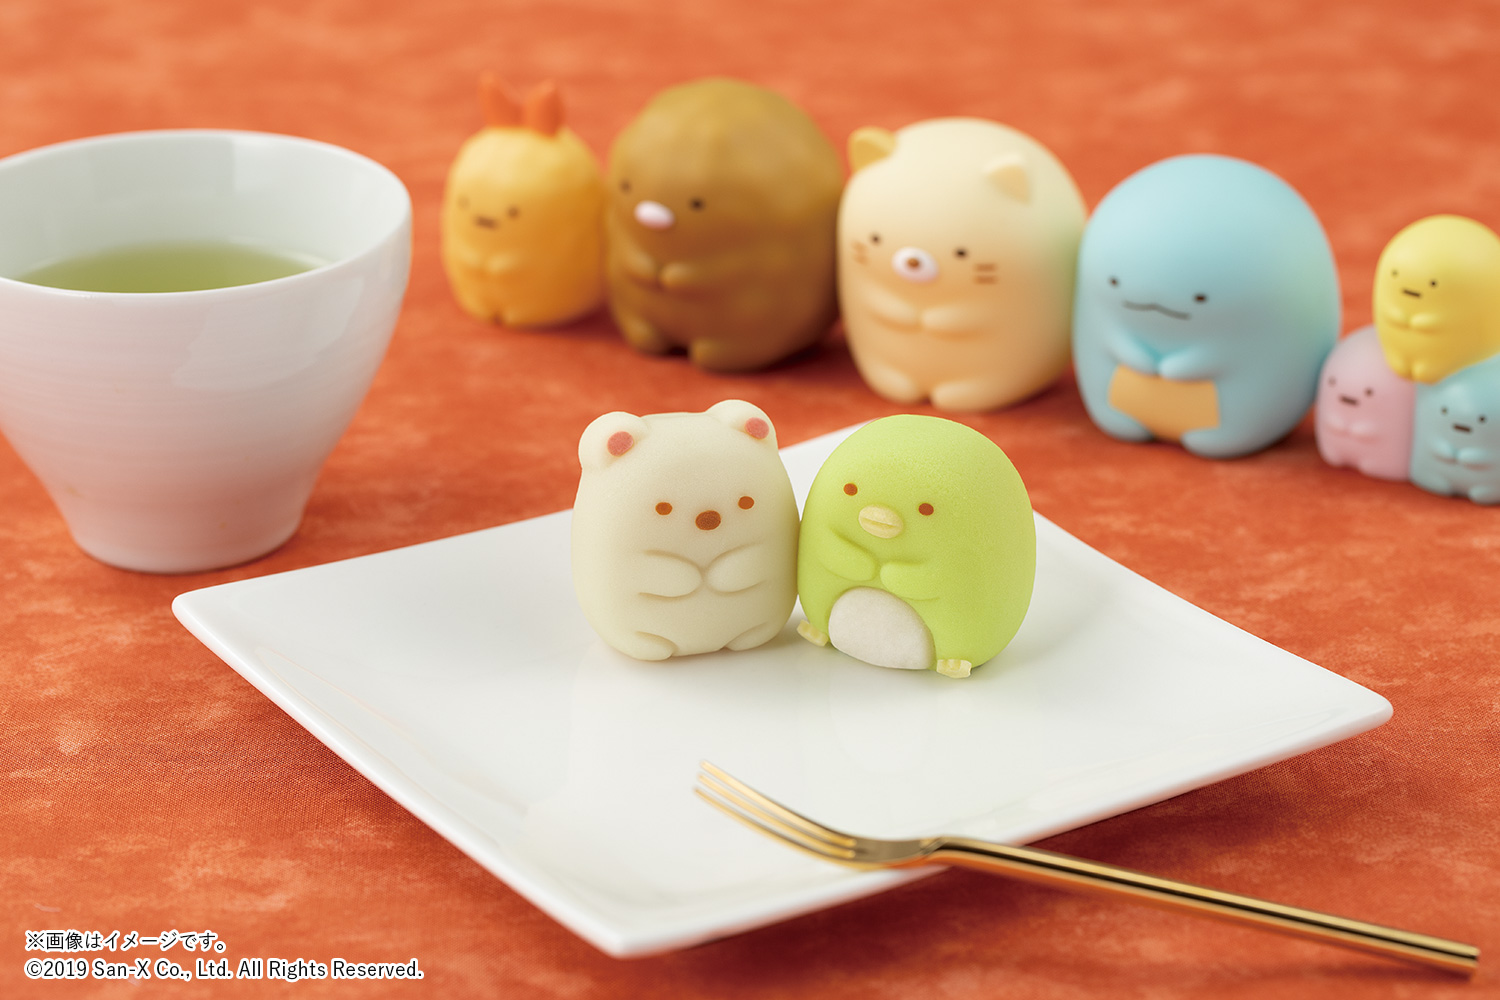 食べマス”和菓子 Tabemasu Confectionery4